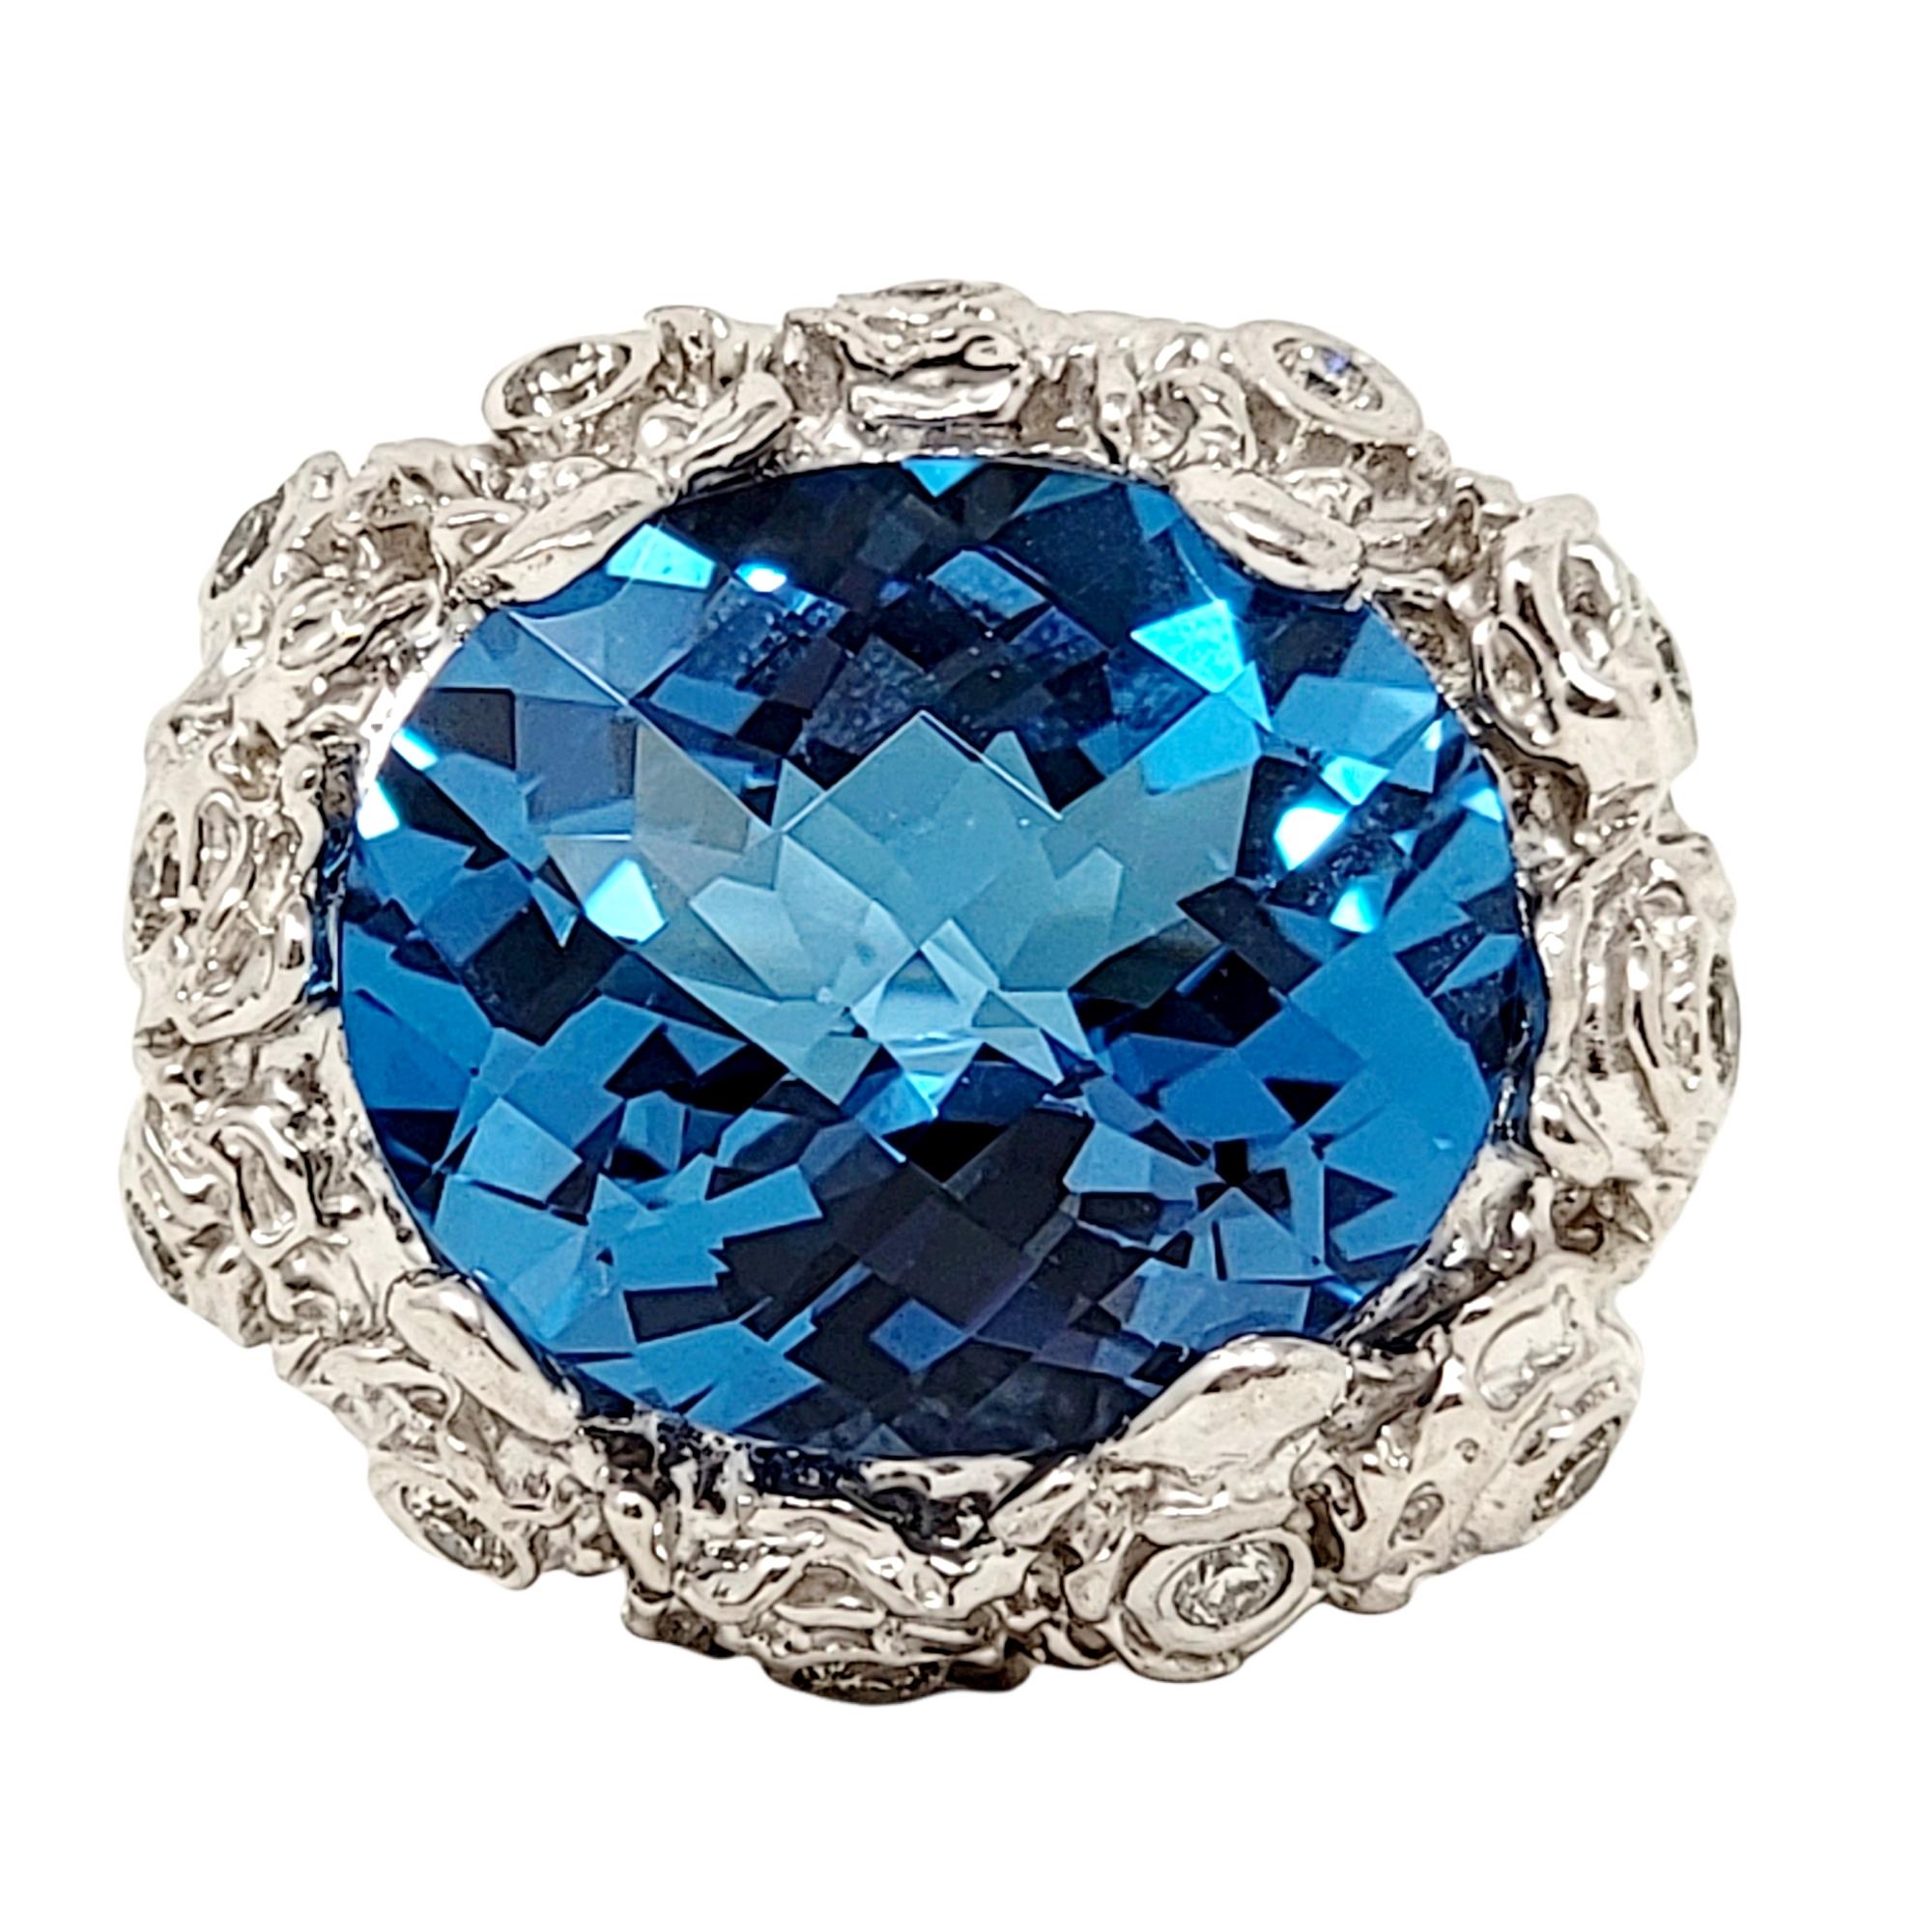 Ringgröße: 5

Prächtiger Ring aus leuchtendem Blautopas mit Diamantakzenten. Die auffallend blaue Farbe, gepaart mit den eisweißen Diamanten, wird Sie nicht mehr aus den Augen lassen. Einfach herrlich!

Metall: 18K Weißgold 
Ringgröße: 5
Gewicht: